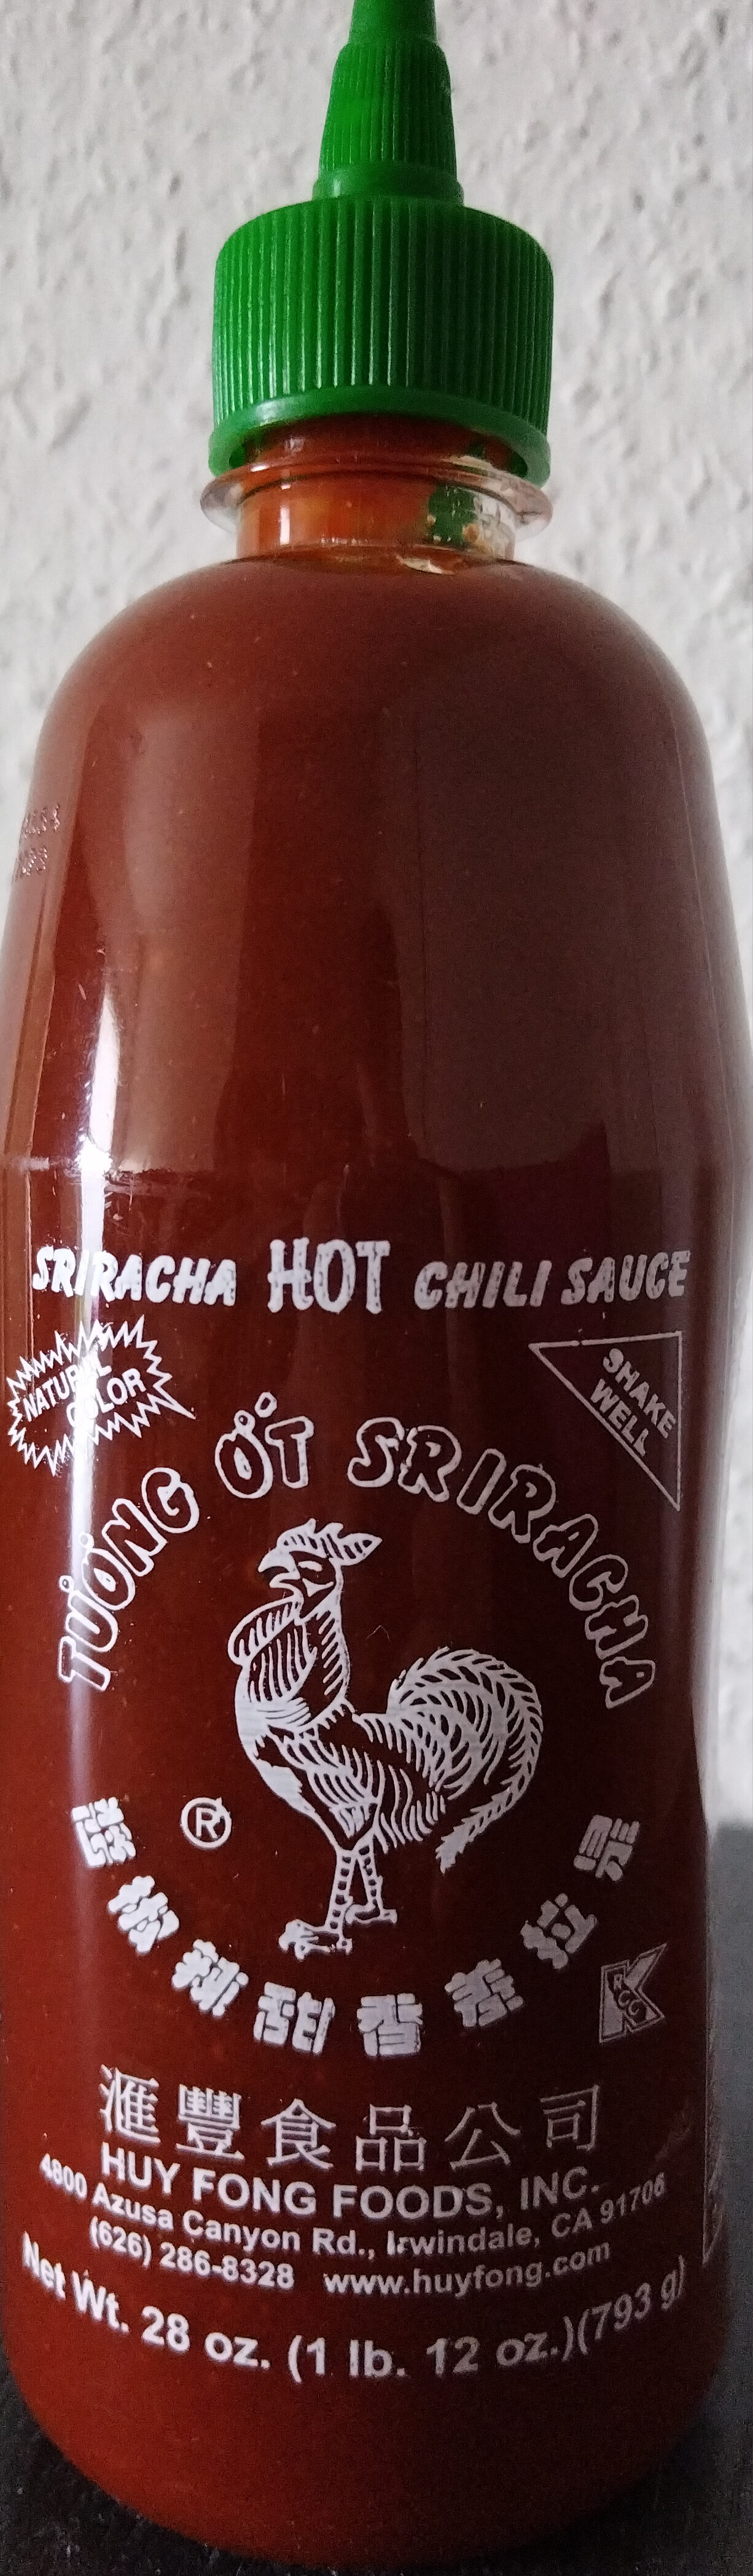 Sriracha-Sauce - Produkt